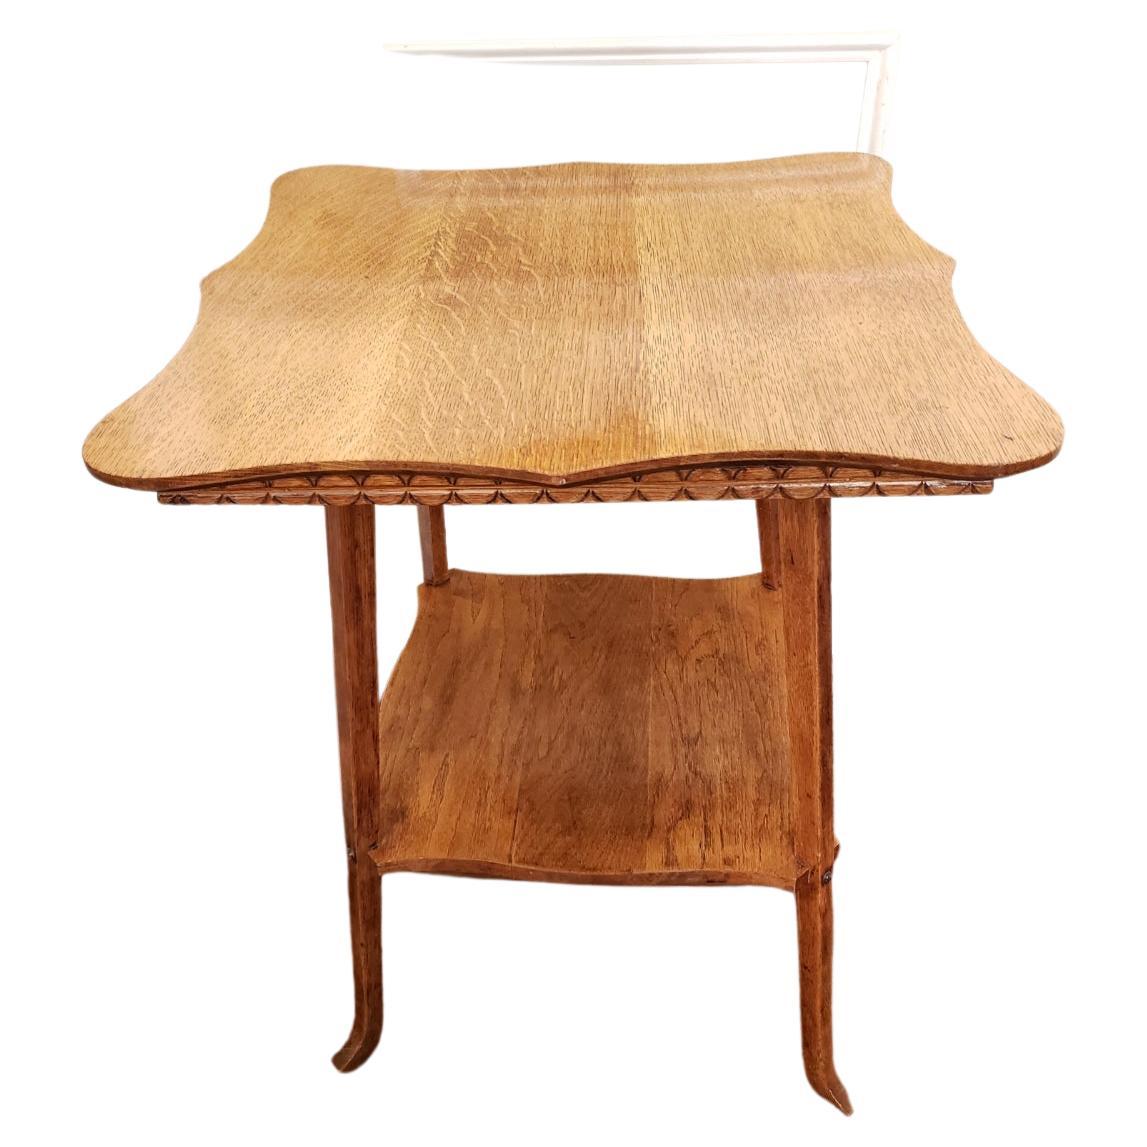 Cette table à deux niveaux de la fin du 19e siècle comprend un grand plateau de table de 23::5 pouces carrés avec des bords sculptés:: ainsi qu'un second plateau inférieur avec... Elle est fabriquée en bois de chêne massif à 100 % et convient à